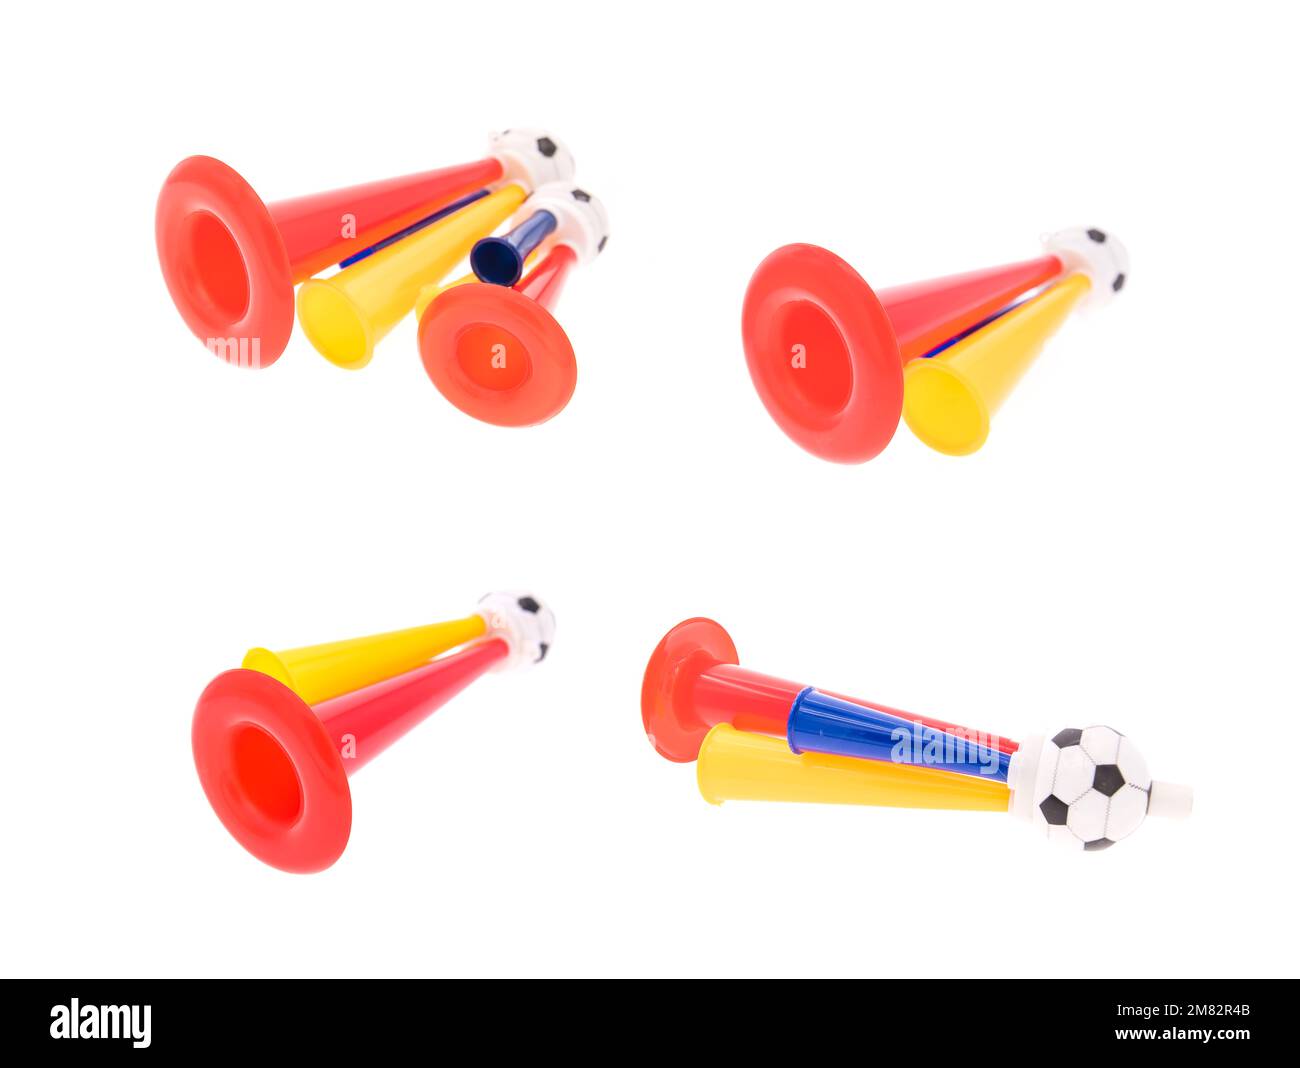 Football soccer triple fan trumpet Stock Photo